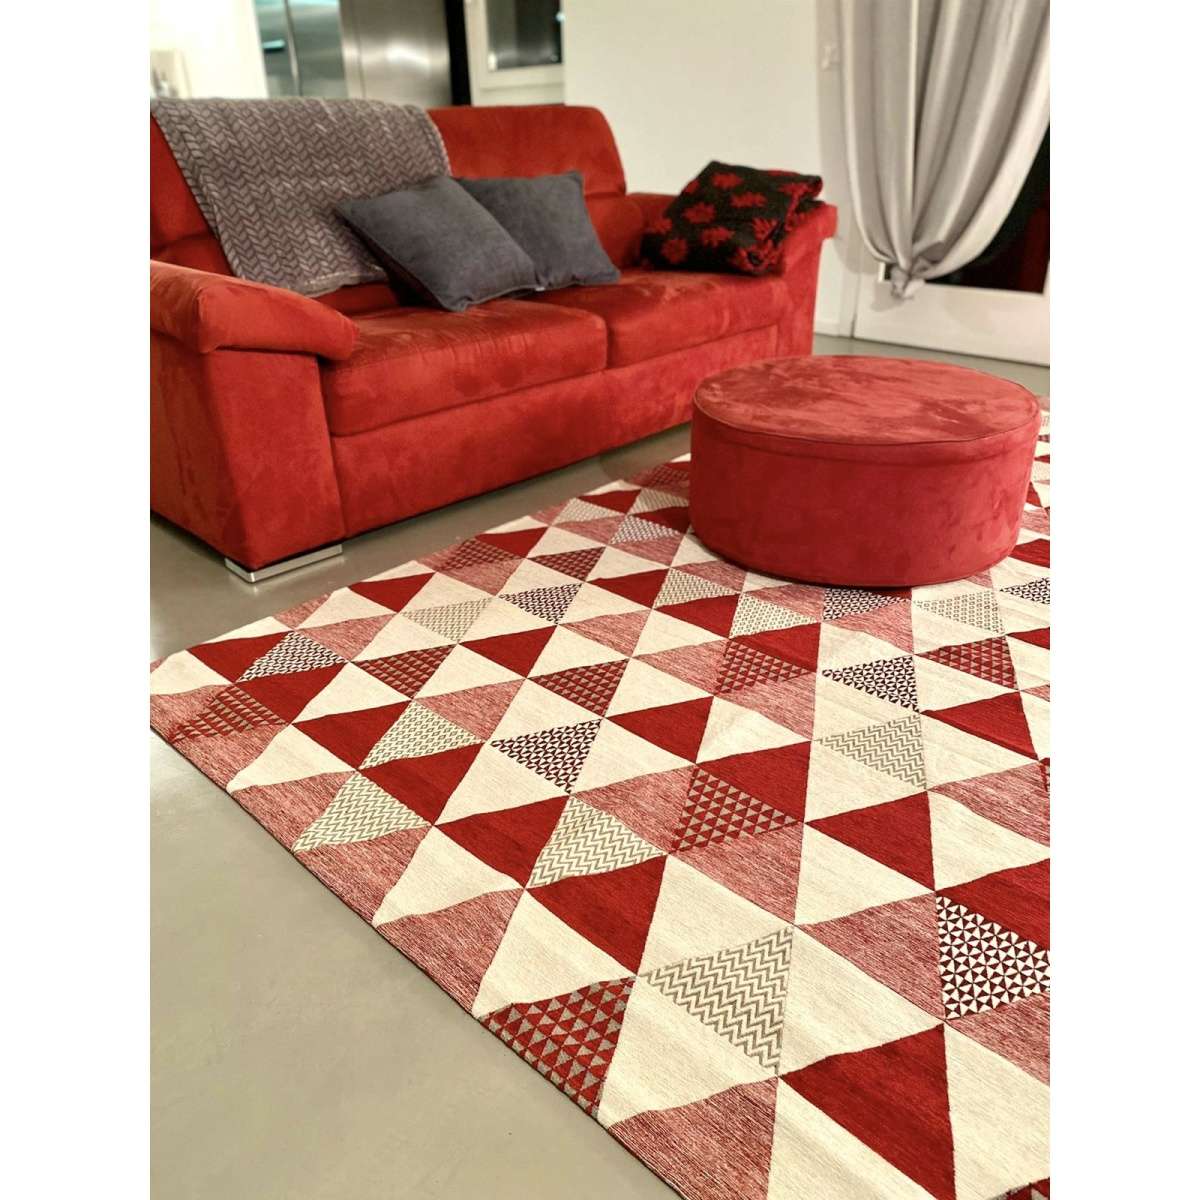 Immagine del prodotto Tappeto Triangoli Rosso Antiscivolo e Lavabile in Lavatrice | Pietro Zanetti Home